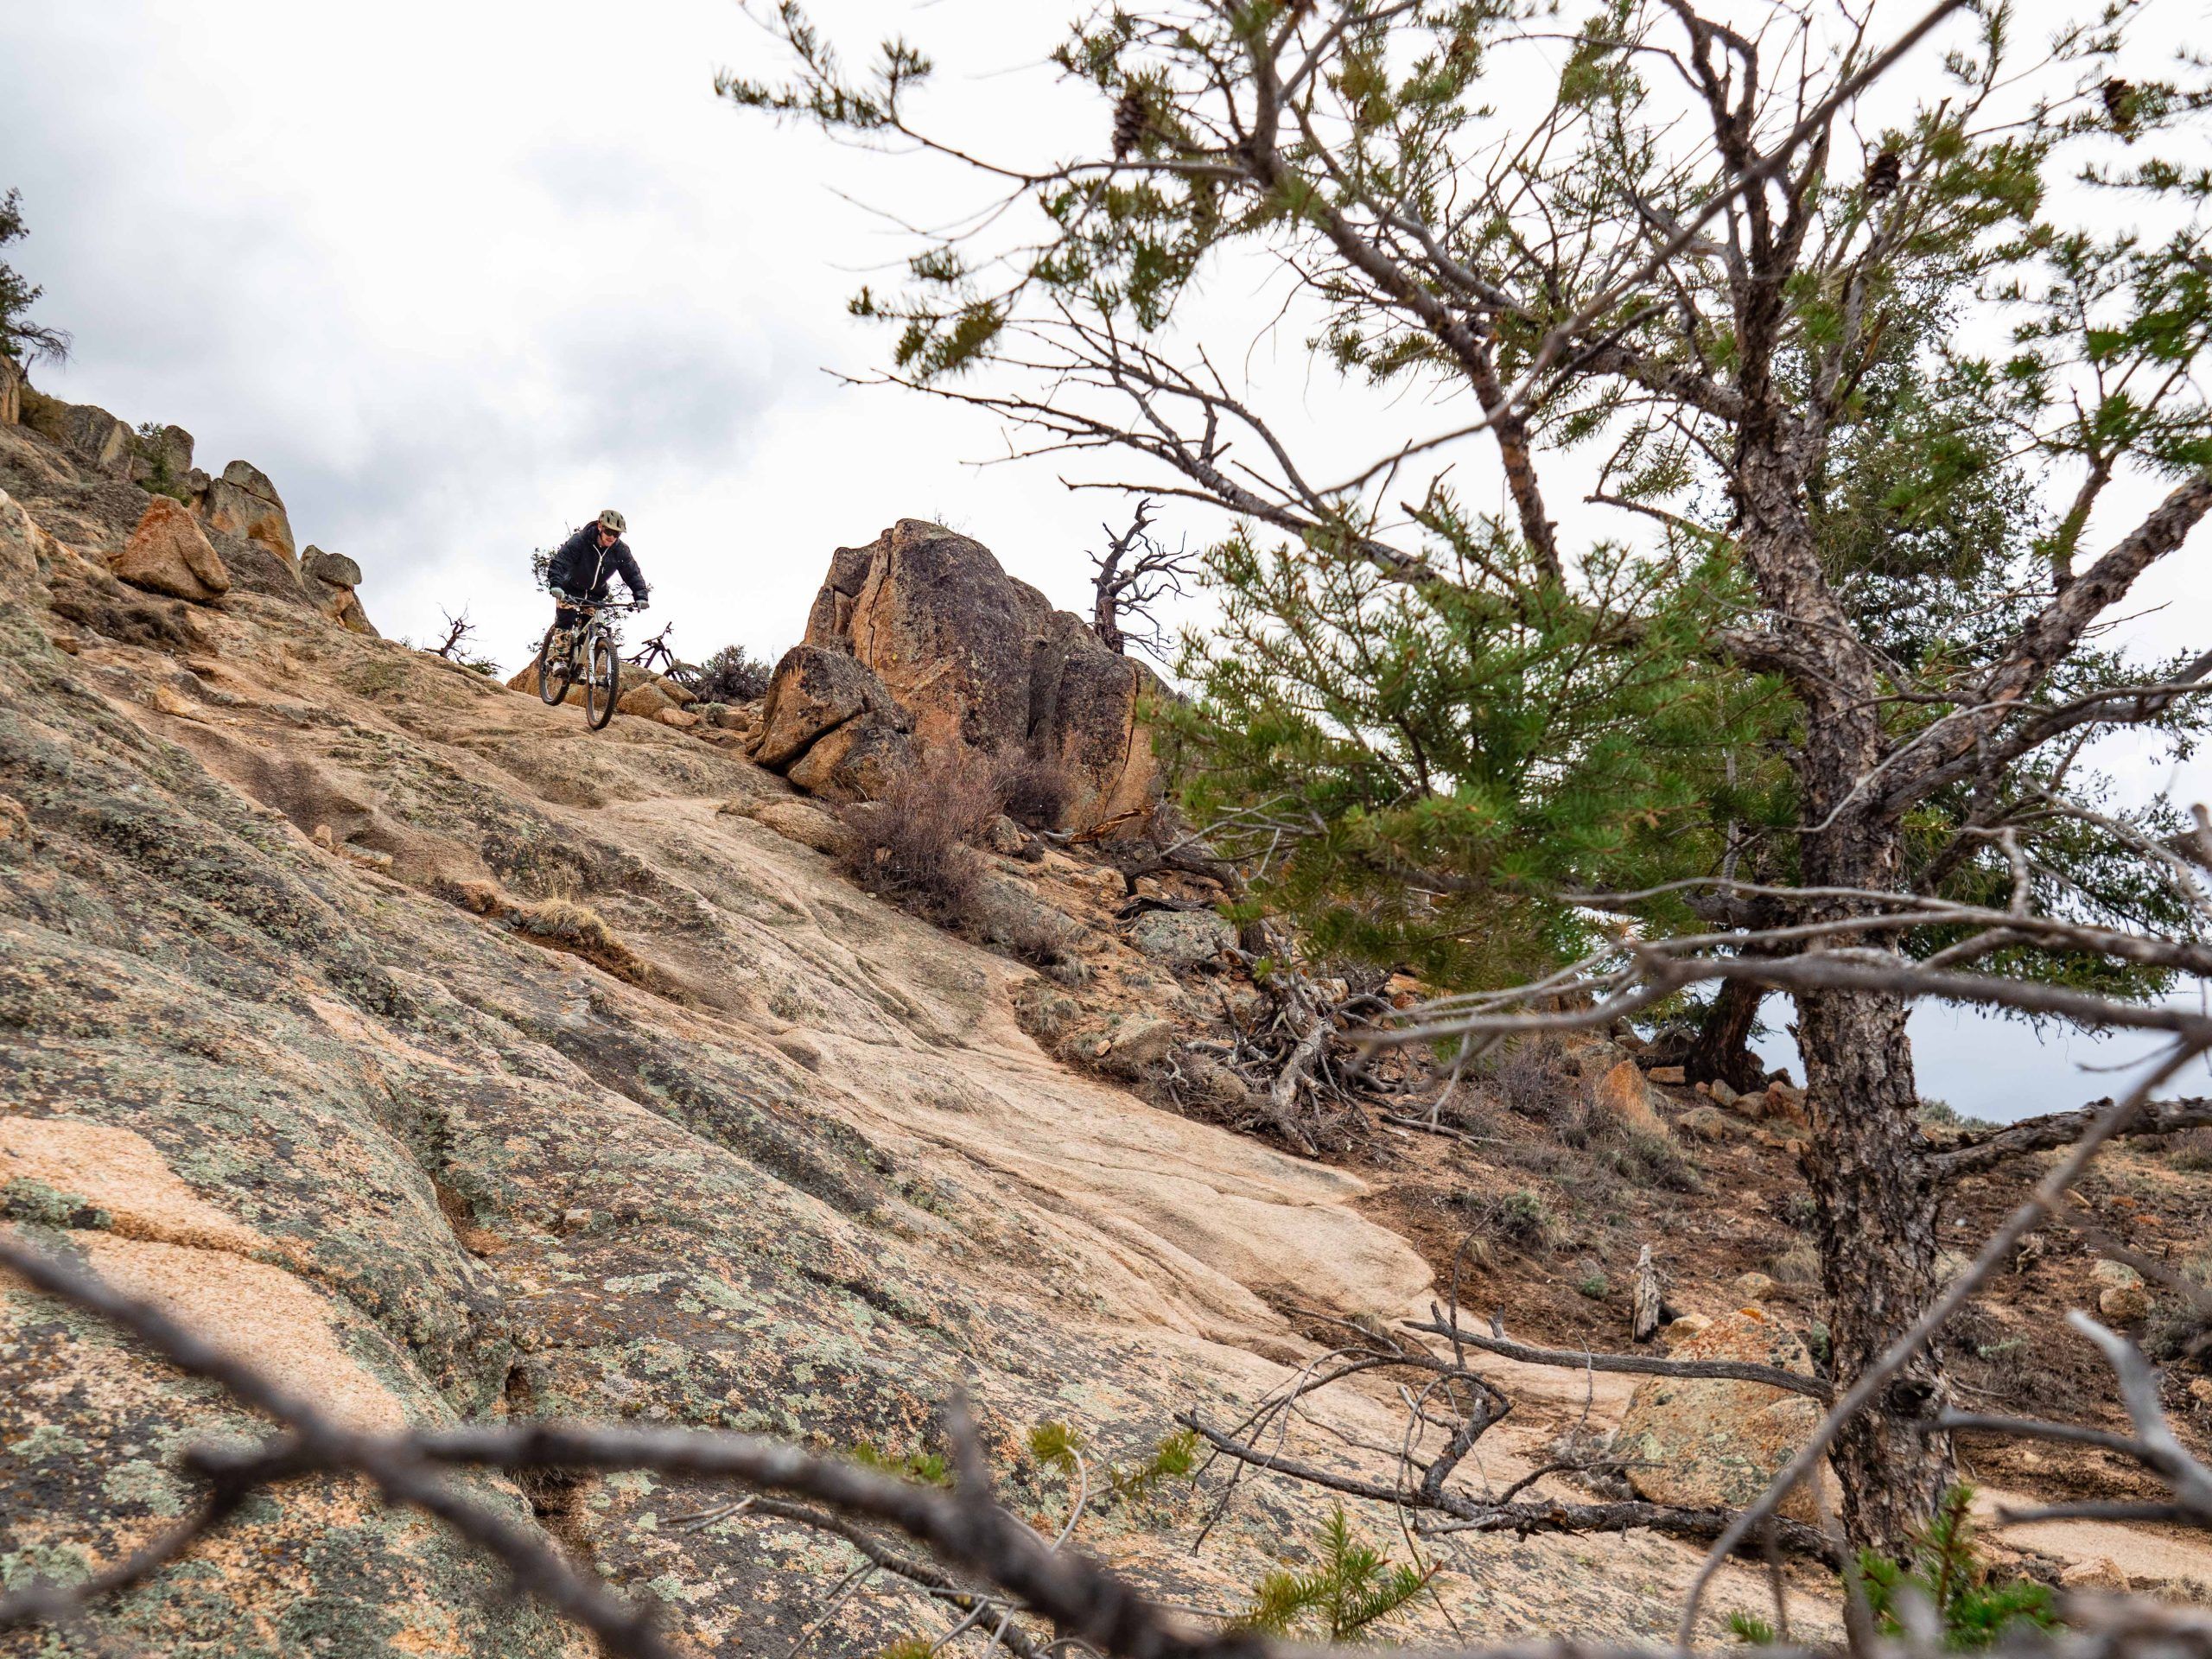 A mountain biker rides down a rocky slope